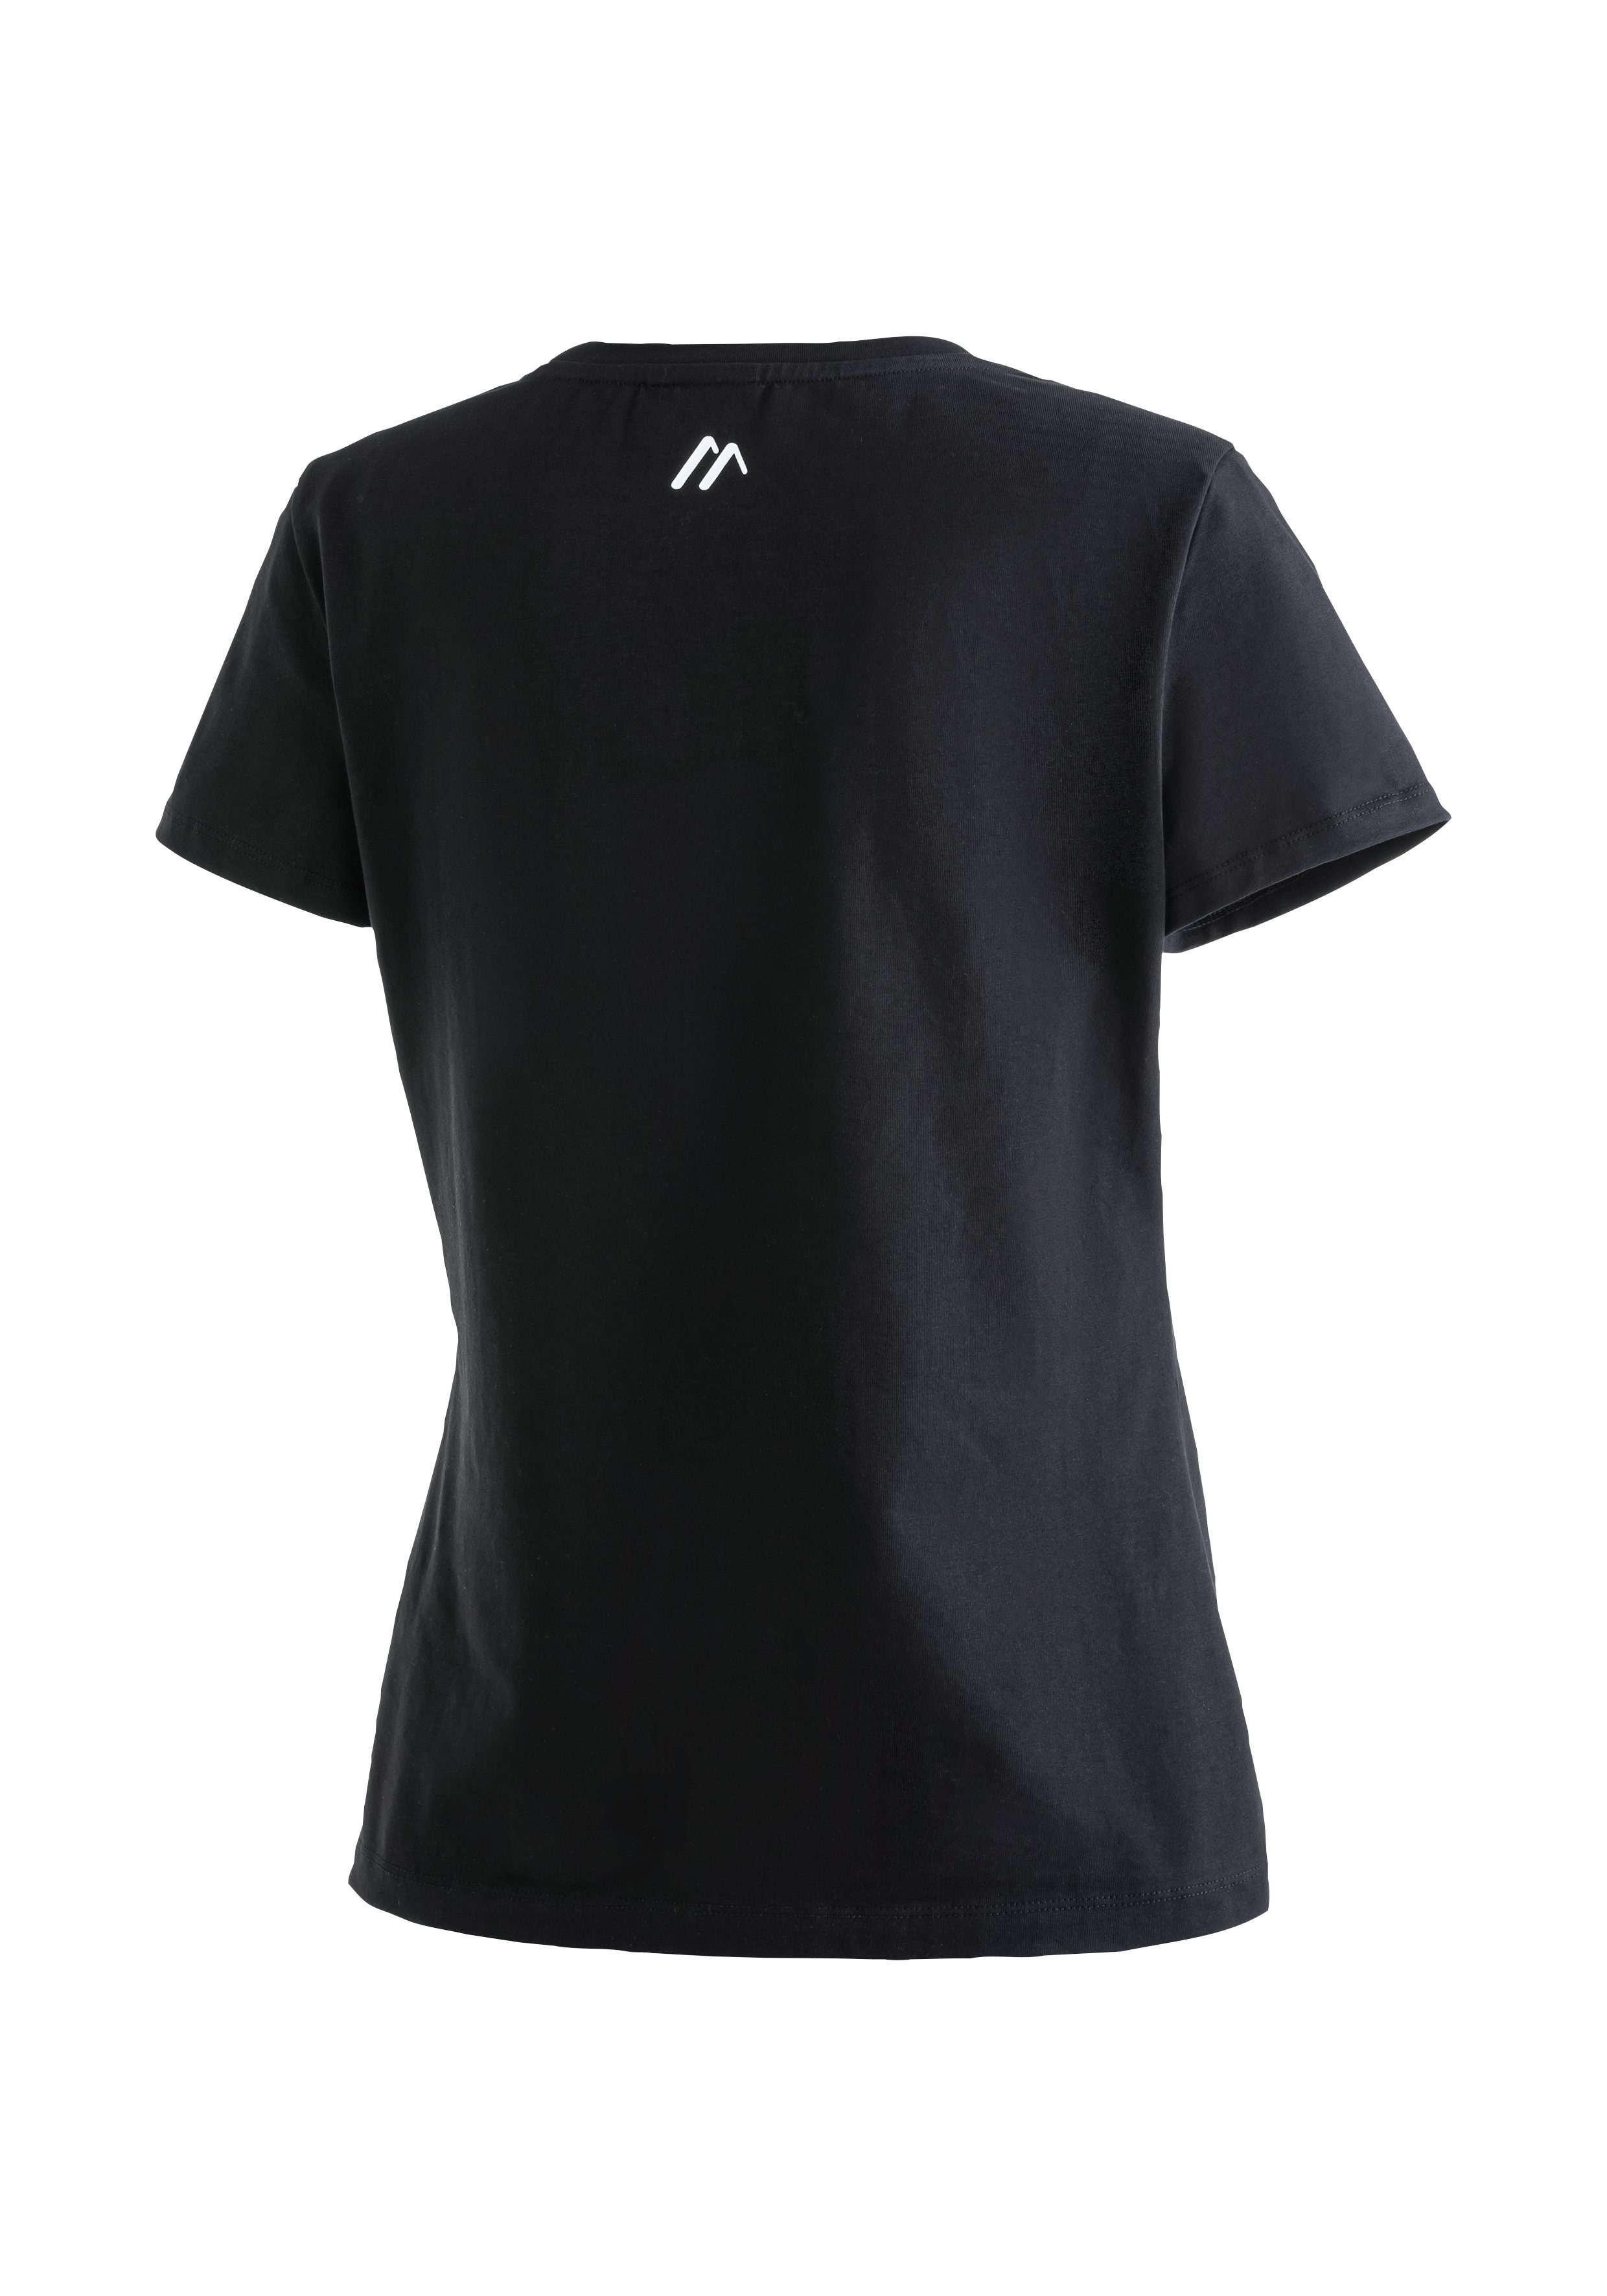 Rundhalsshirt Funktionsshirt Vielseitiges schwarz Sports Tee W elastischem Material MS aus Maier